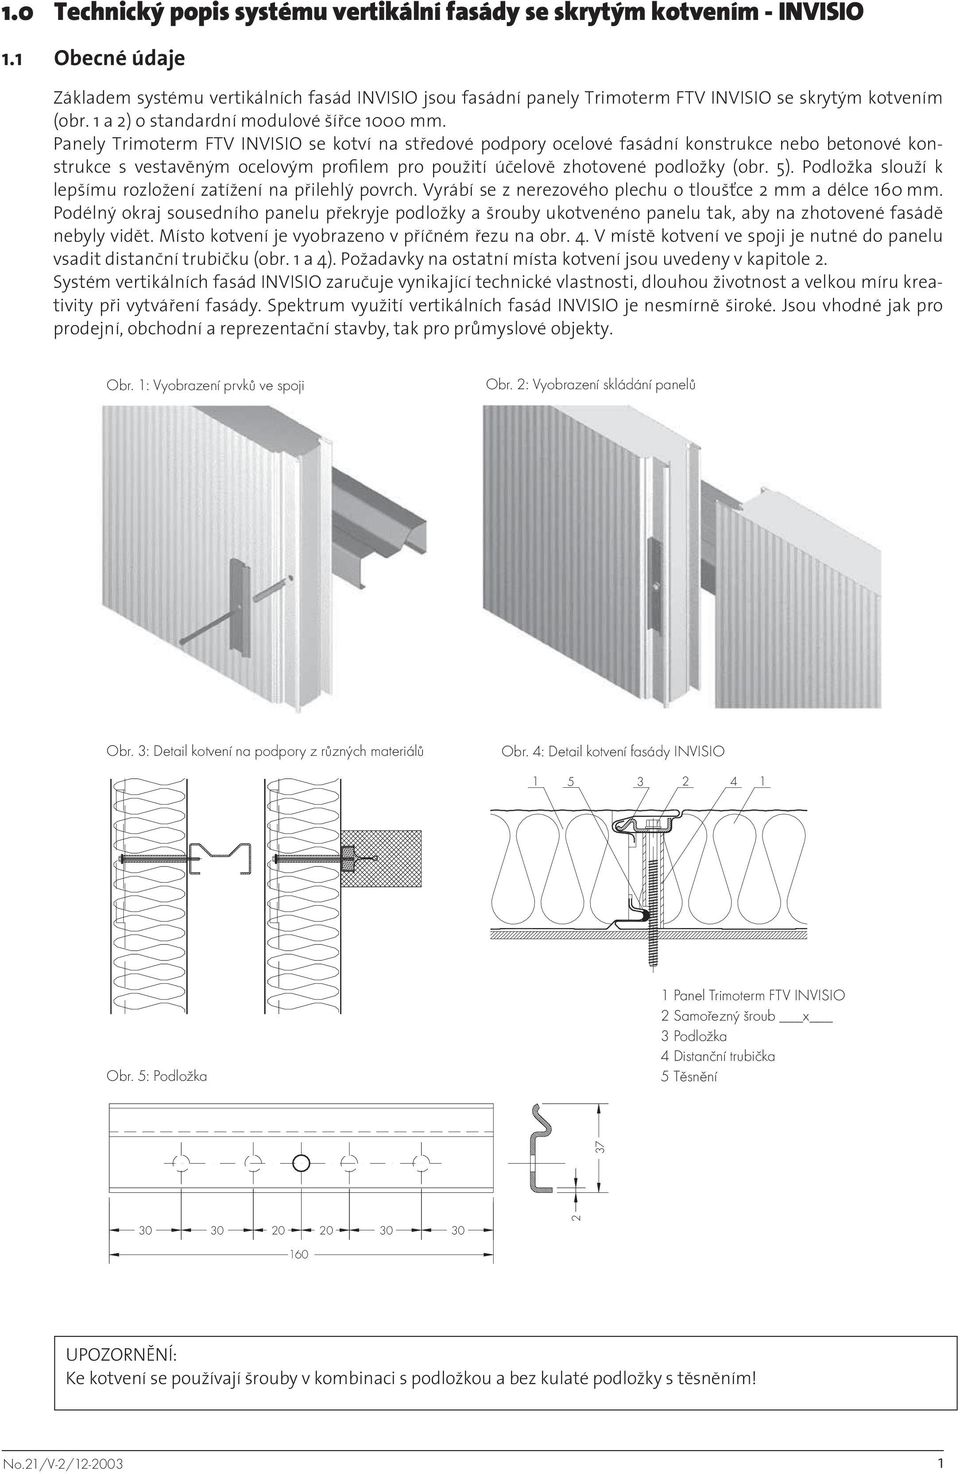 Panely Trimoterm FTV INVISIO se kotví na středové podpory ocelové fasádní konstrukce nebo betonové konstrukce s vestavěným ocelovým profilem pro použití účelově zhotovené podložky (obr. 5).